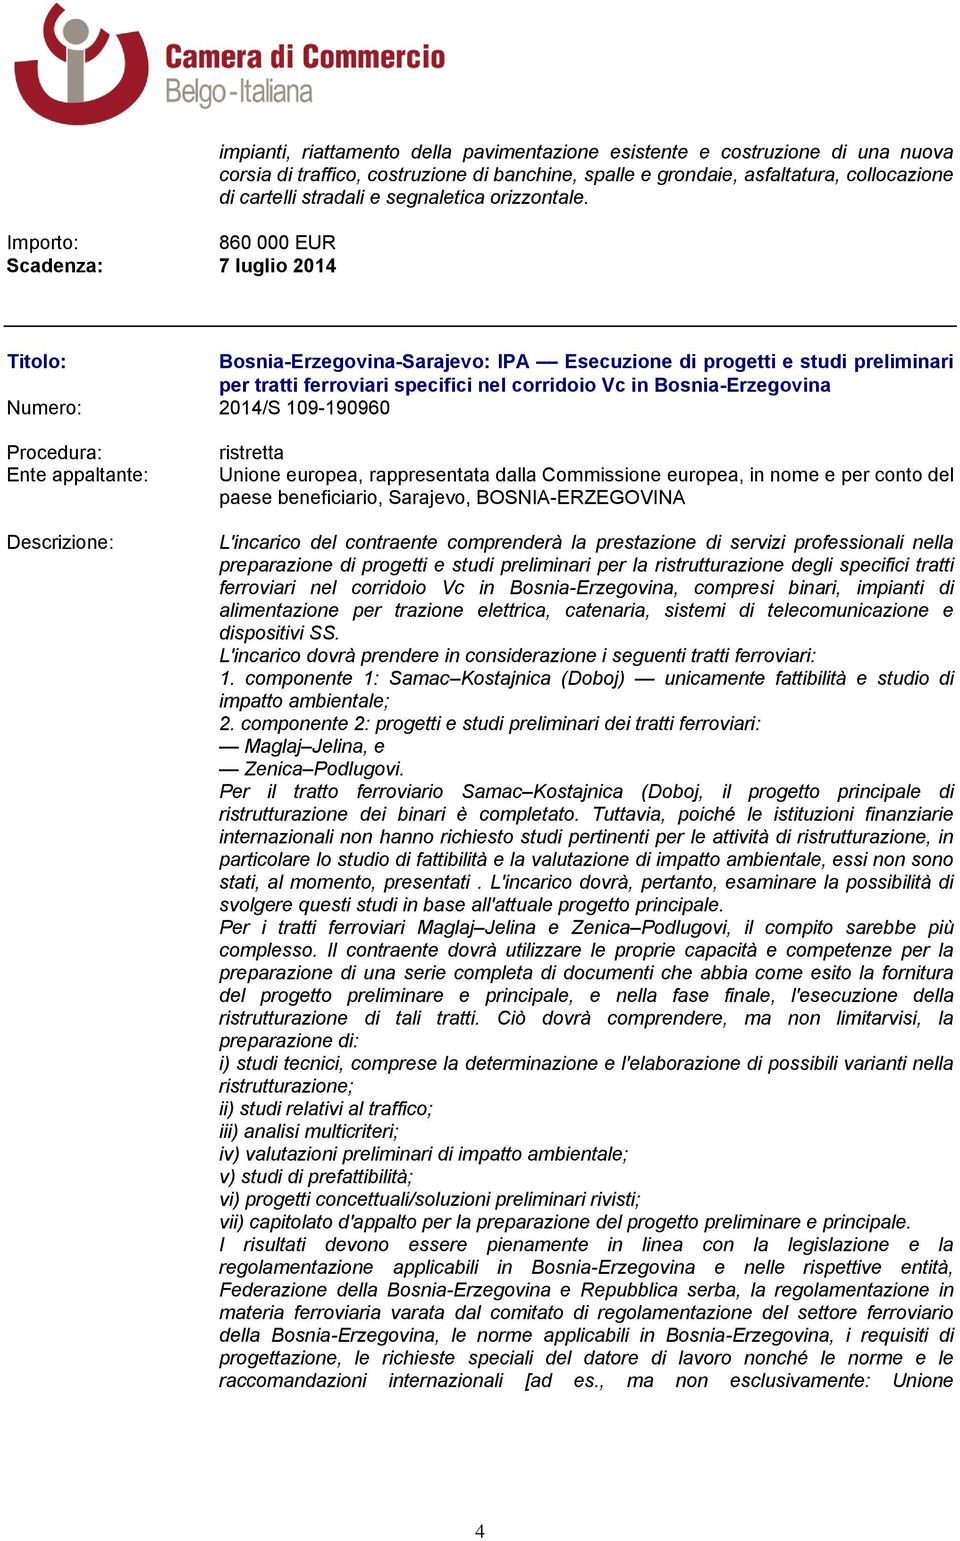 Bosnia-Erzegovina-Sarajevo: IPA Esecuzione di progetti e studi preliminari per tratti ferroviari specifici nel corridoio Vc in Bosnia-Erzegovina Numero: 2014/S 109-190960 Unione europea,